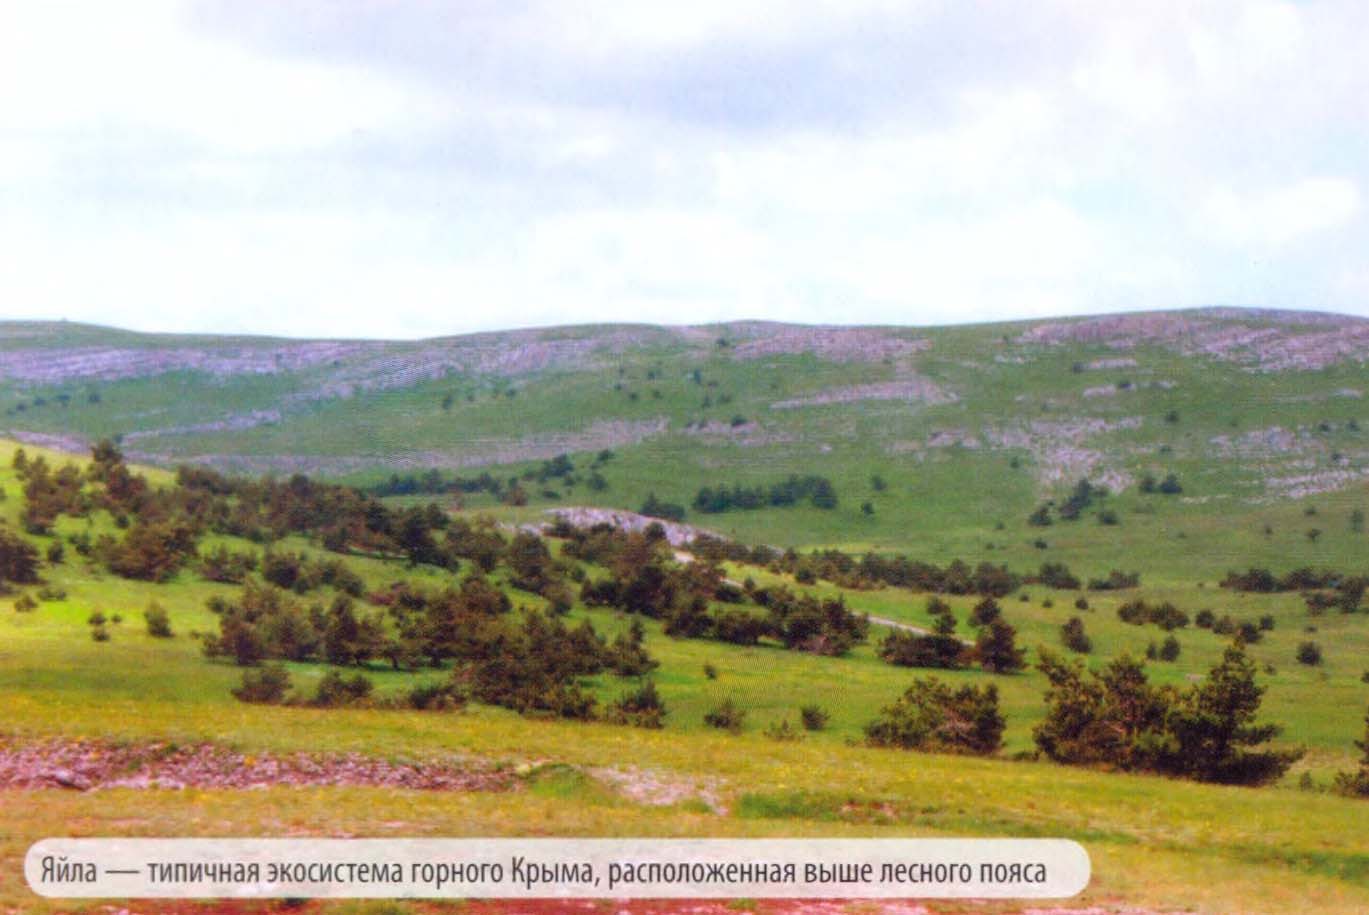 Яйла — типичная экосистема горного Крыма, расположенная выше лесного пояса.